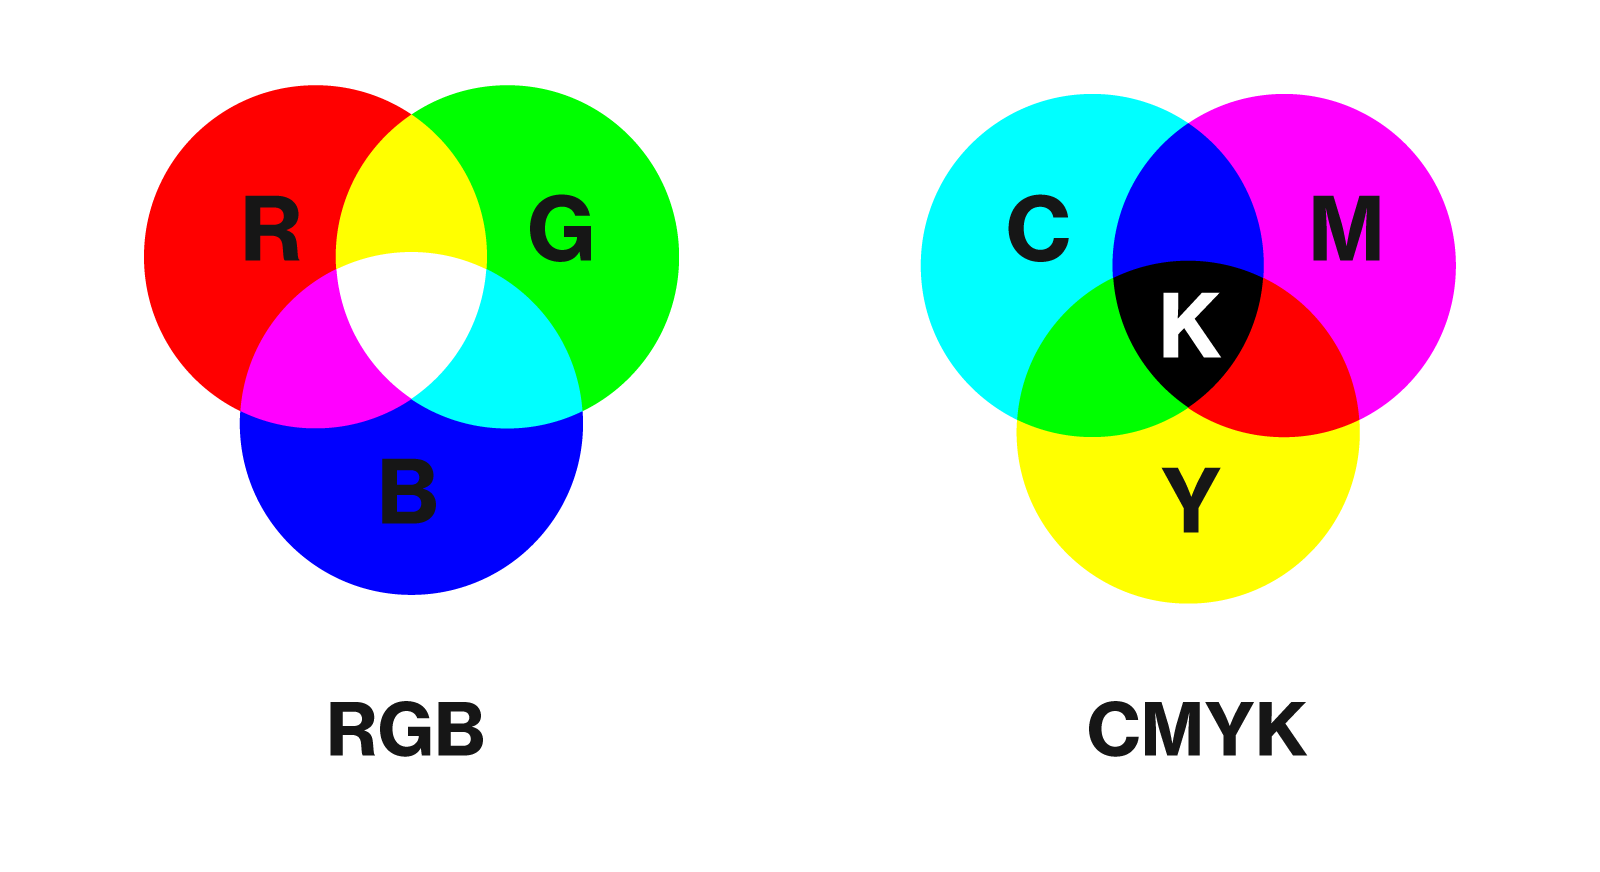 Cmyk сохранить. Цветовая модель CMYK. Цветовая модель RGB И CMYK. Цветовые схемы RGB И CMYK. Цветовое пространство RGB smyk.